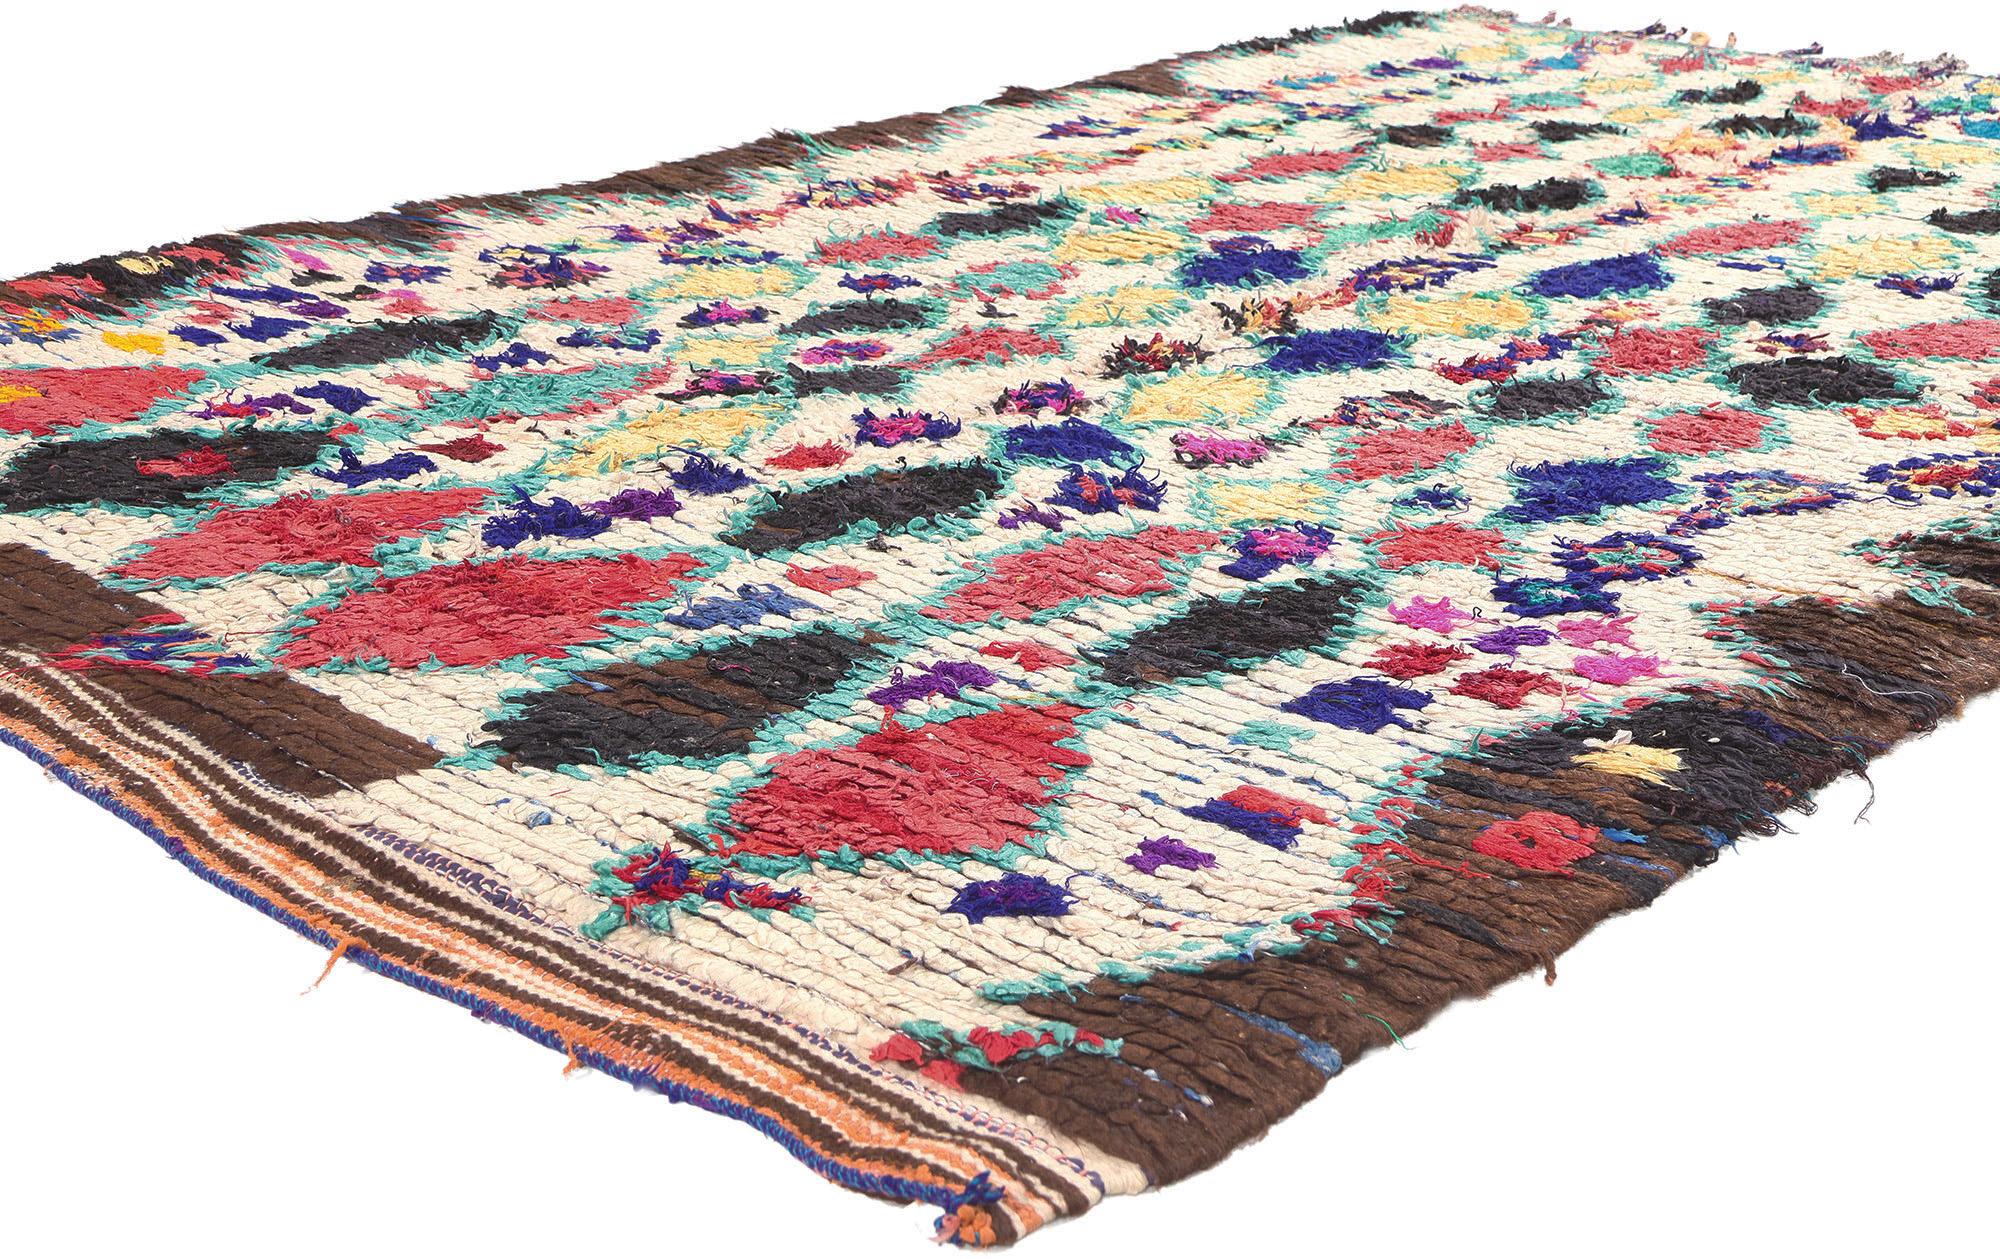 20375 Vintage Boucherouite Marocain Tapis Azilal, 04'11 x 08'03. 

Fabriqué selon la tradition ancestrale du nouage à la main, ce tapis marocain vintage Boucherouite est l'œuvre des mains habiles des tribus berbères de la région d'Azilal, nichée